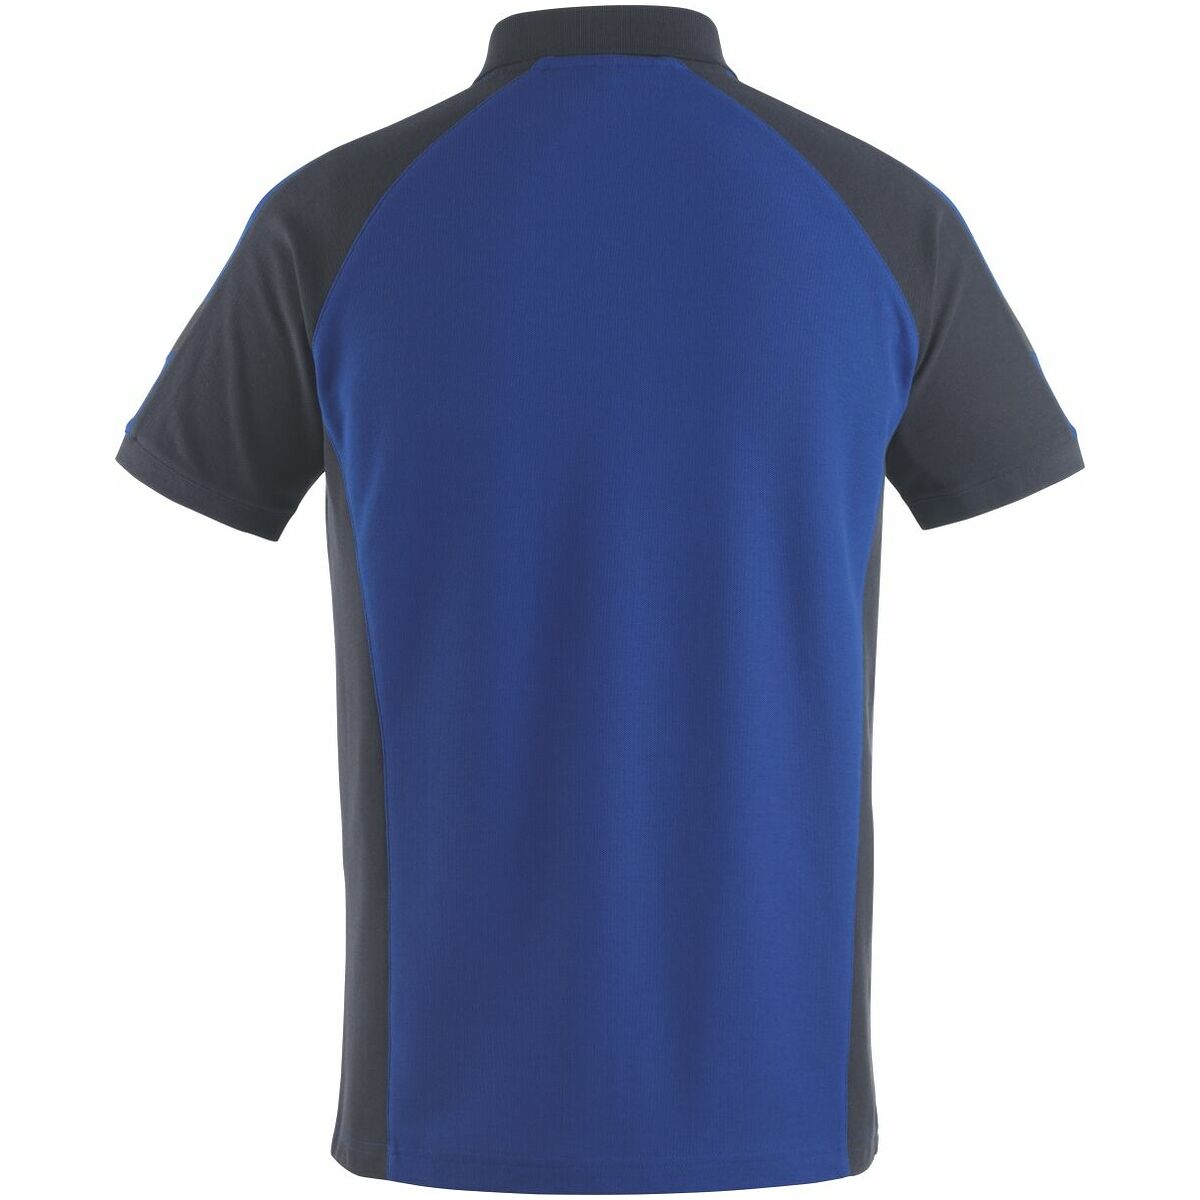 Polo marškinėliai Bottrop mėlynos / tamsiai mėlynos spalvos